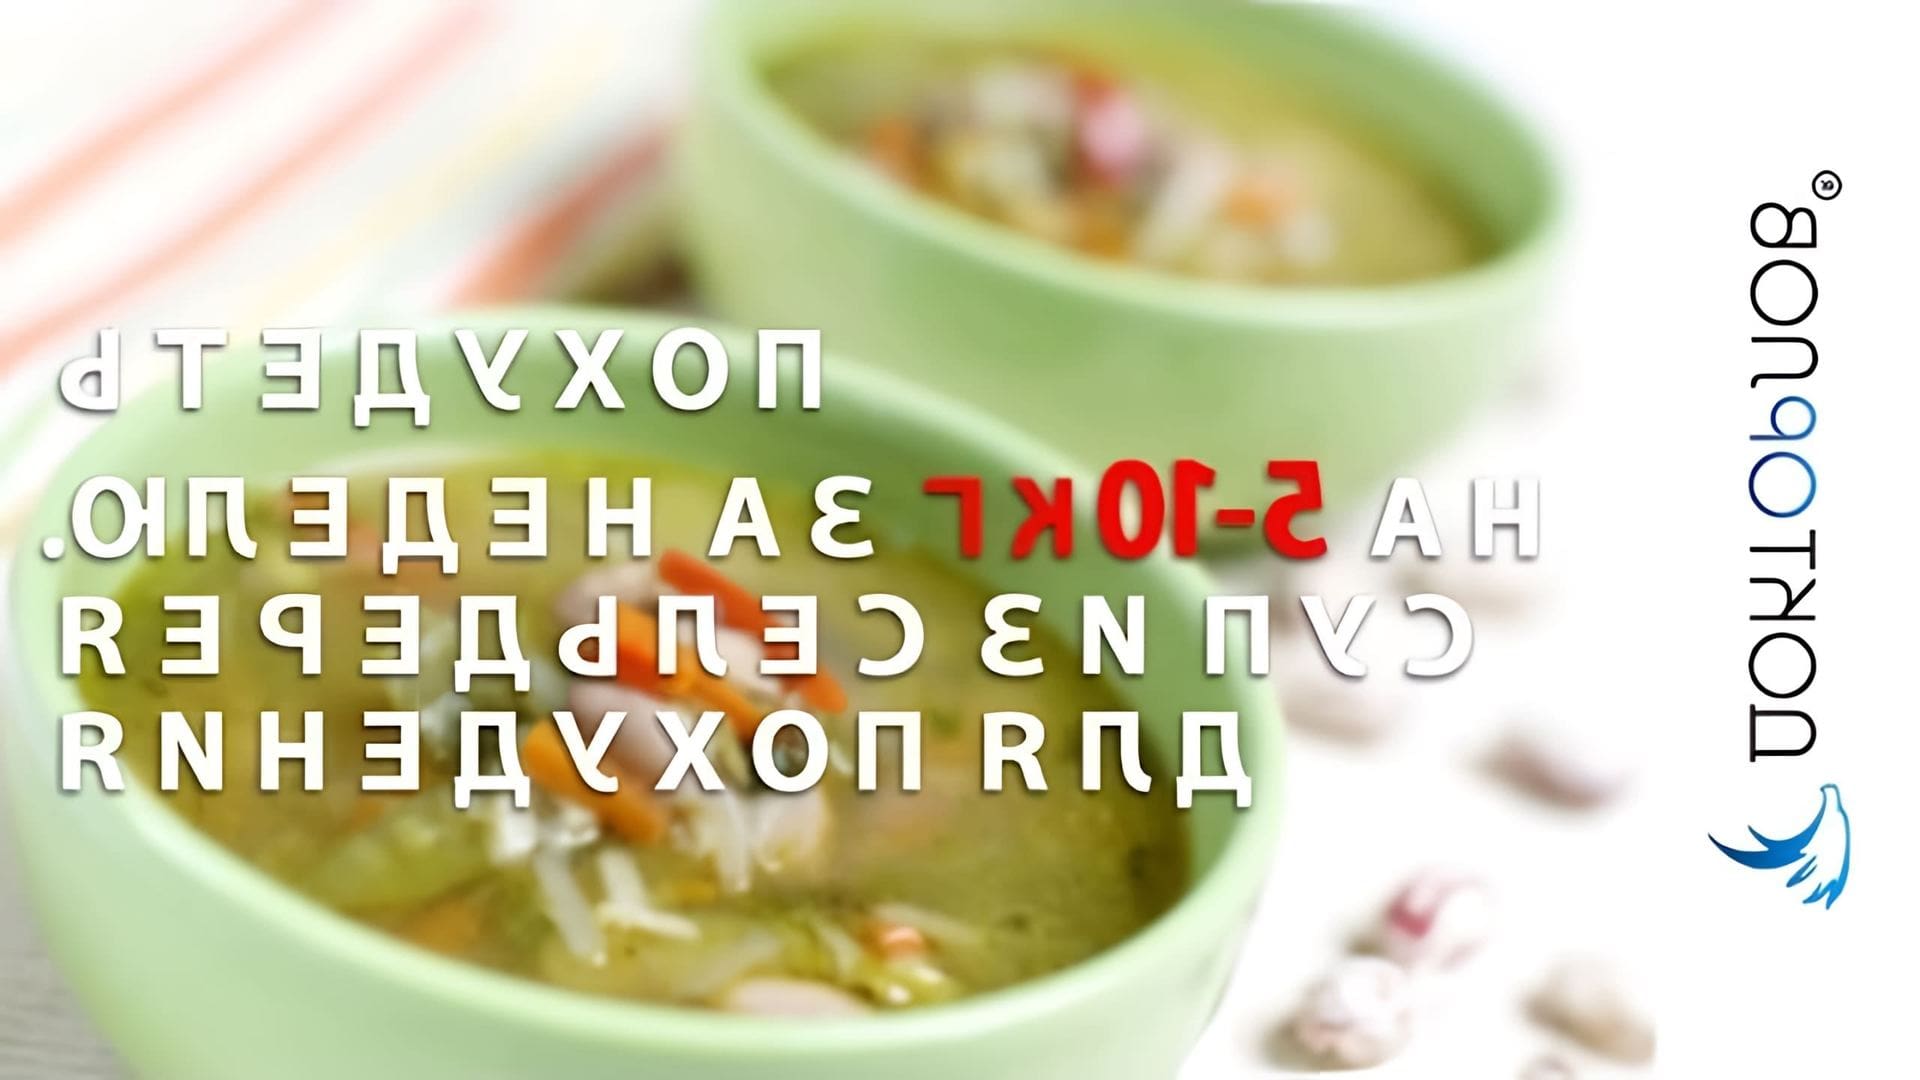 В этом видео-ролике рассказывается о том, как можно похудеть на 5-10 кг за неделю с помощью супа из сельдерея